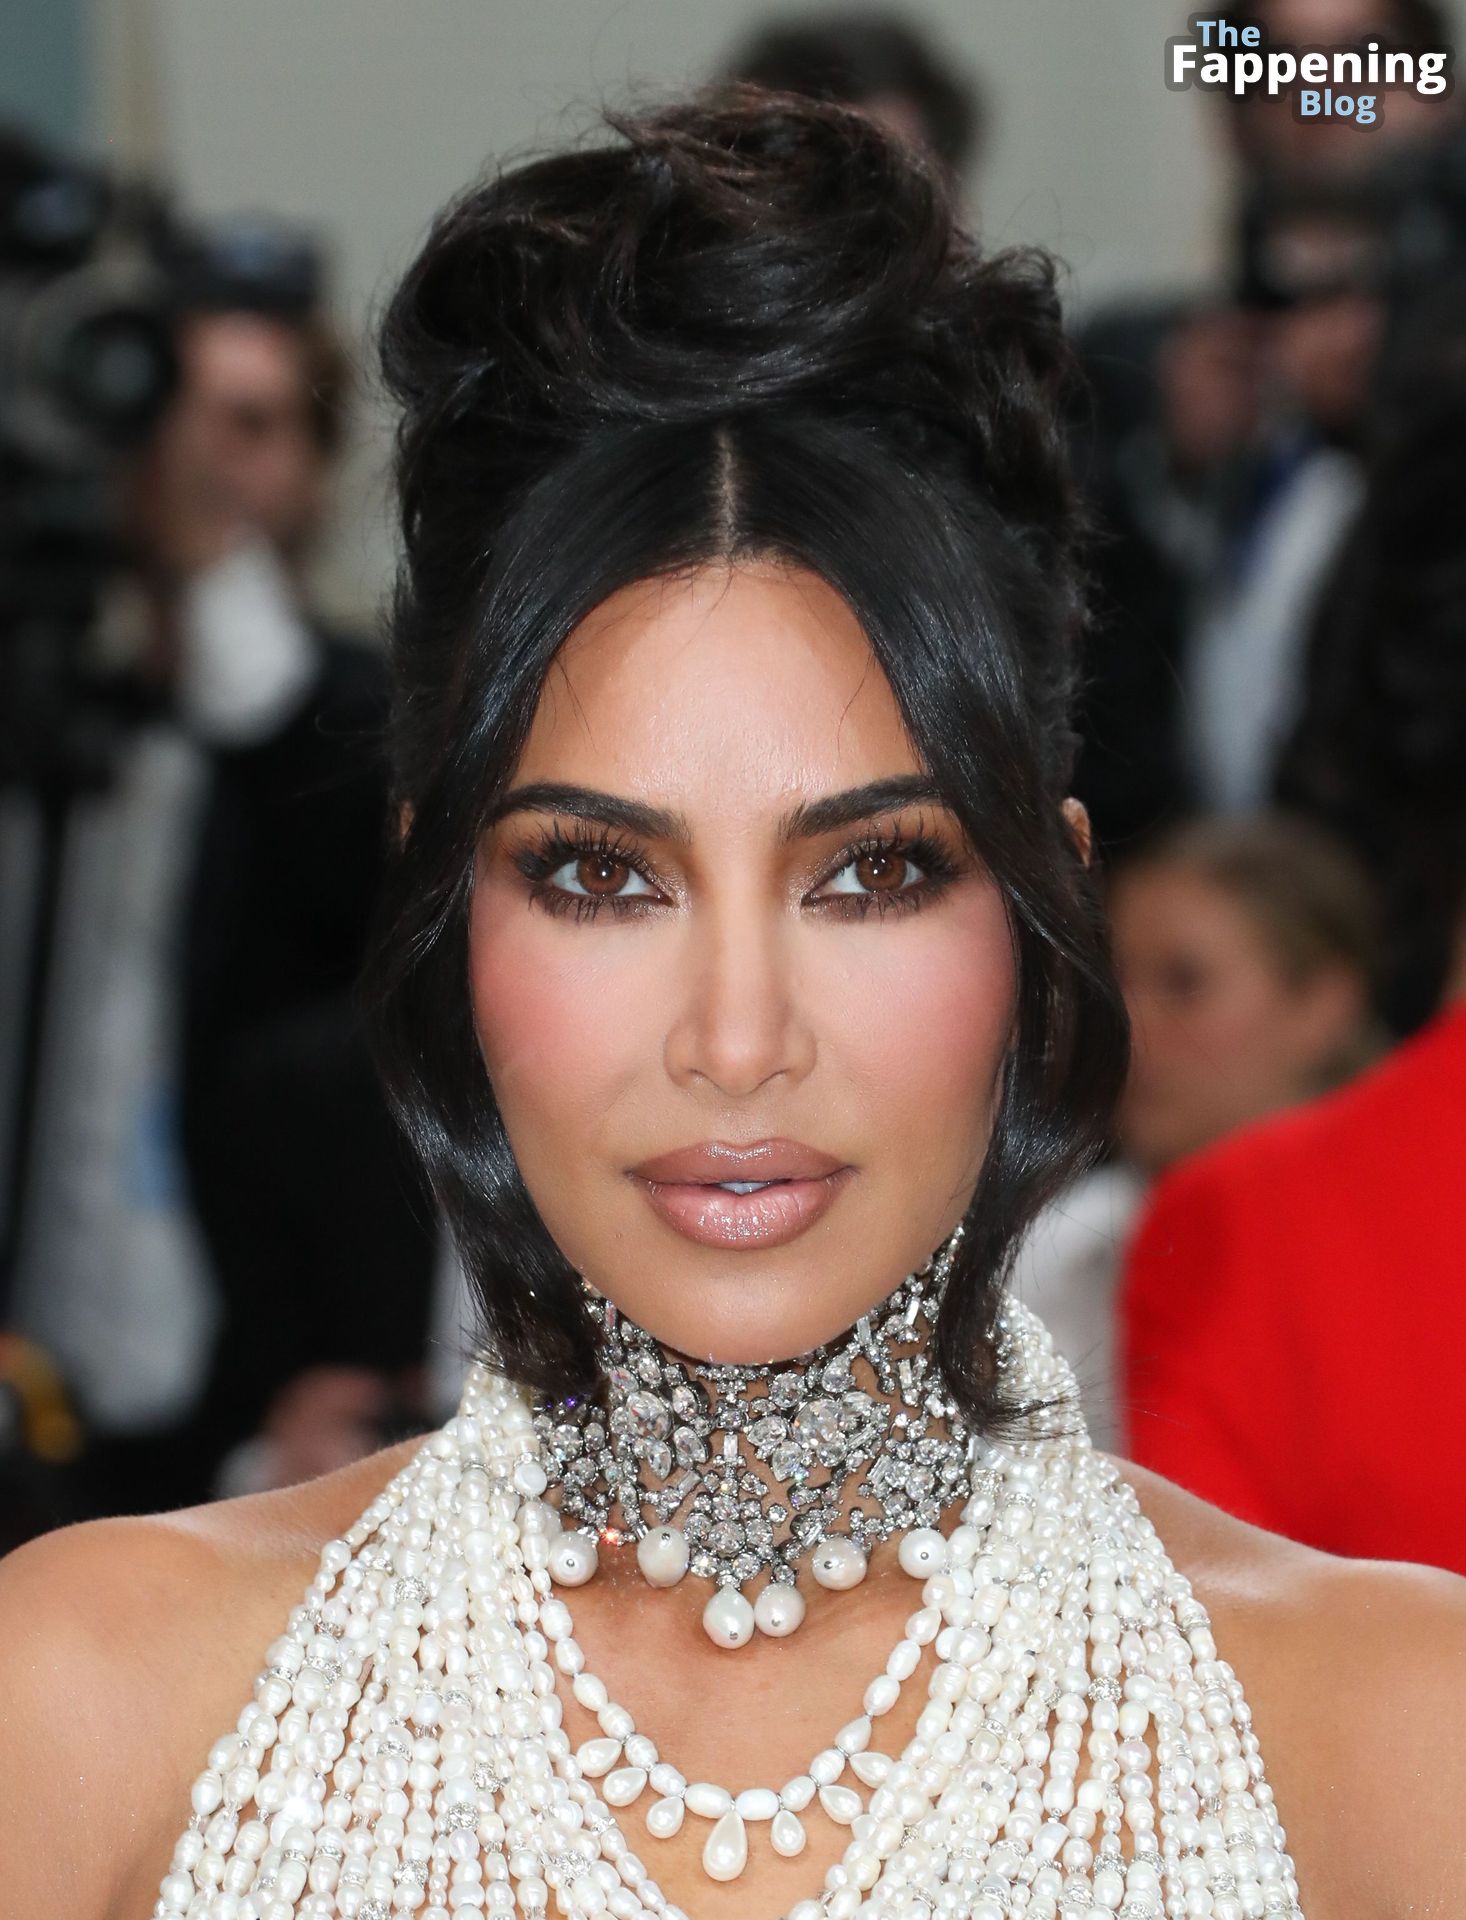 Kim-Kardashian-Sexy-The-Fappening-Blog-35.jpg